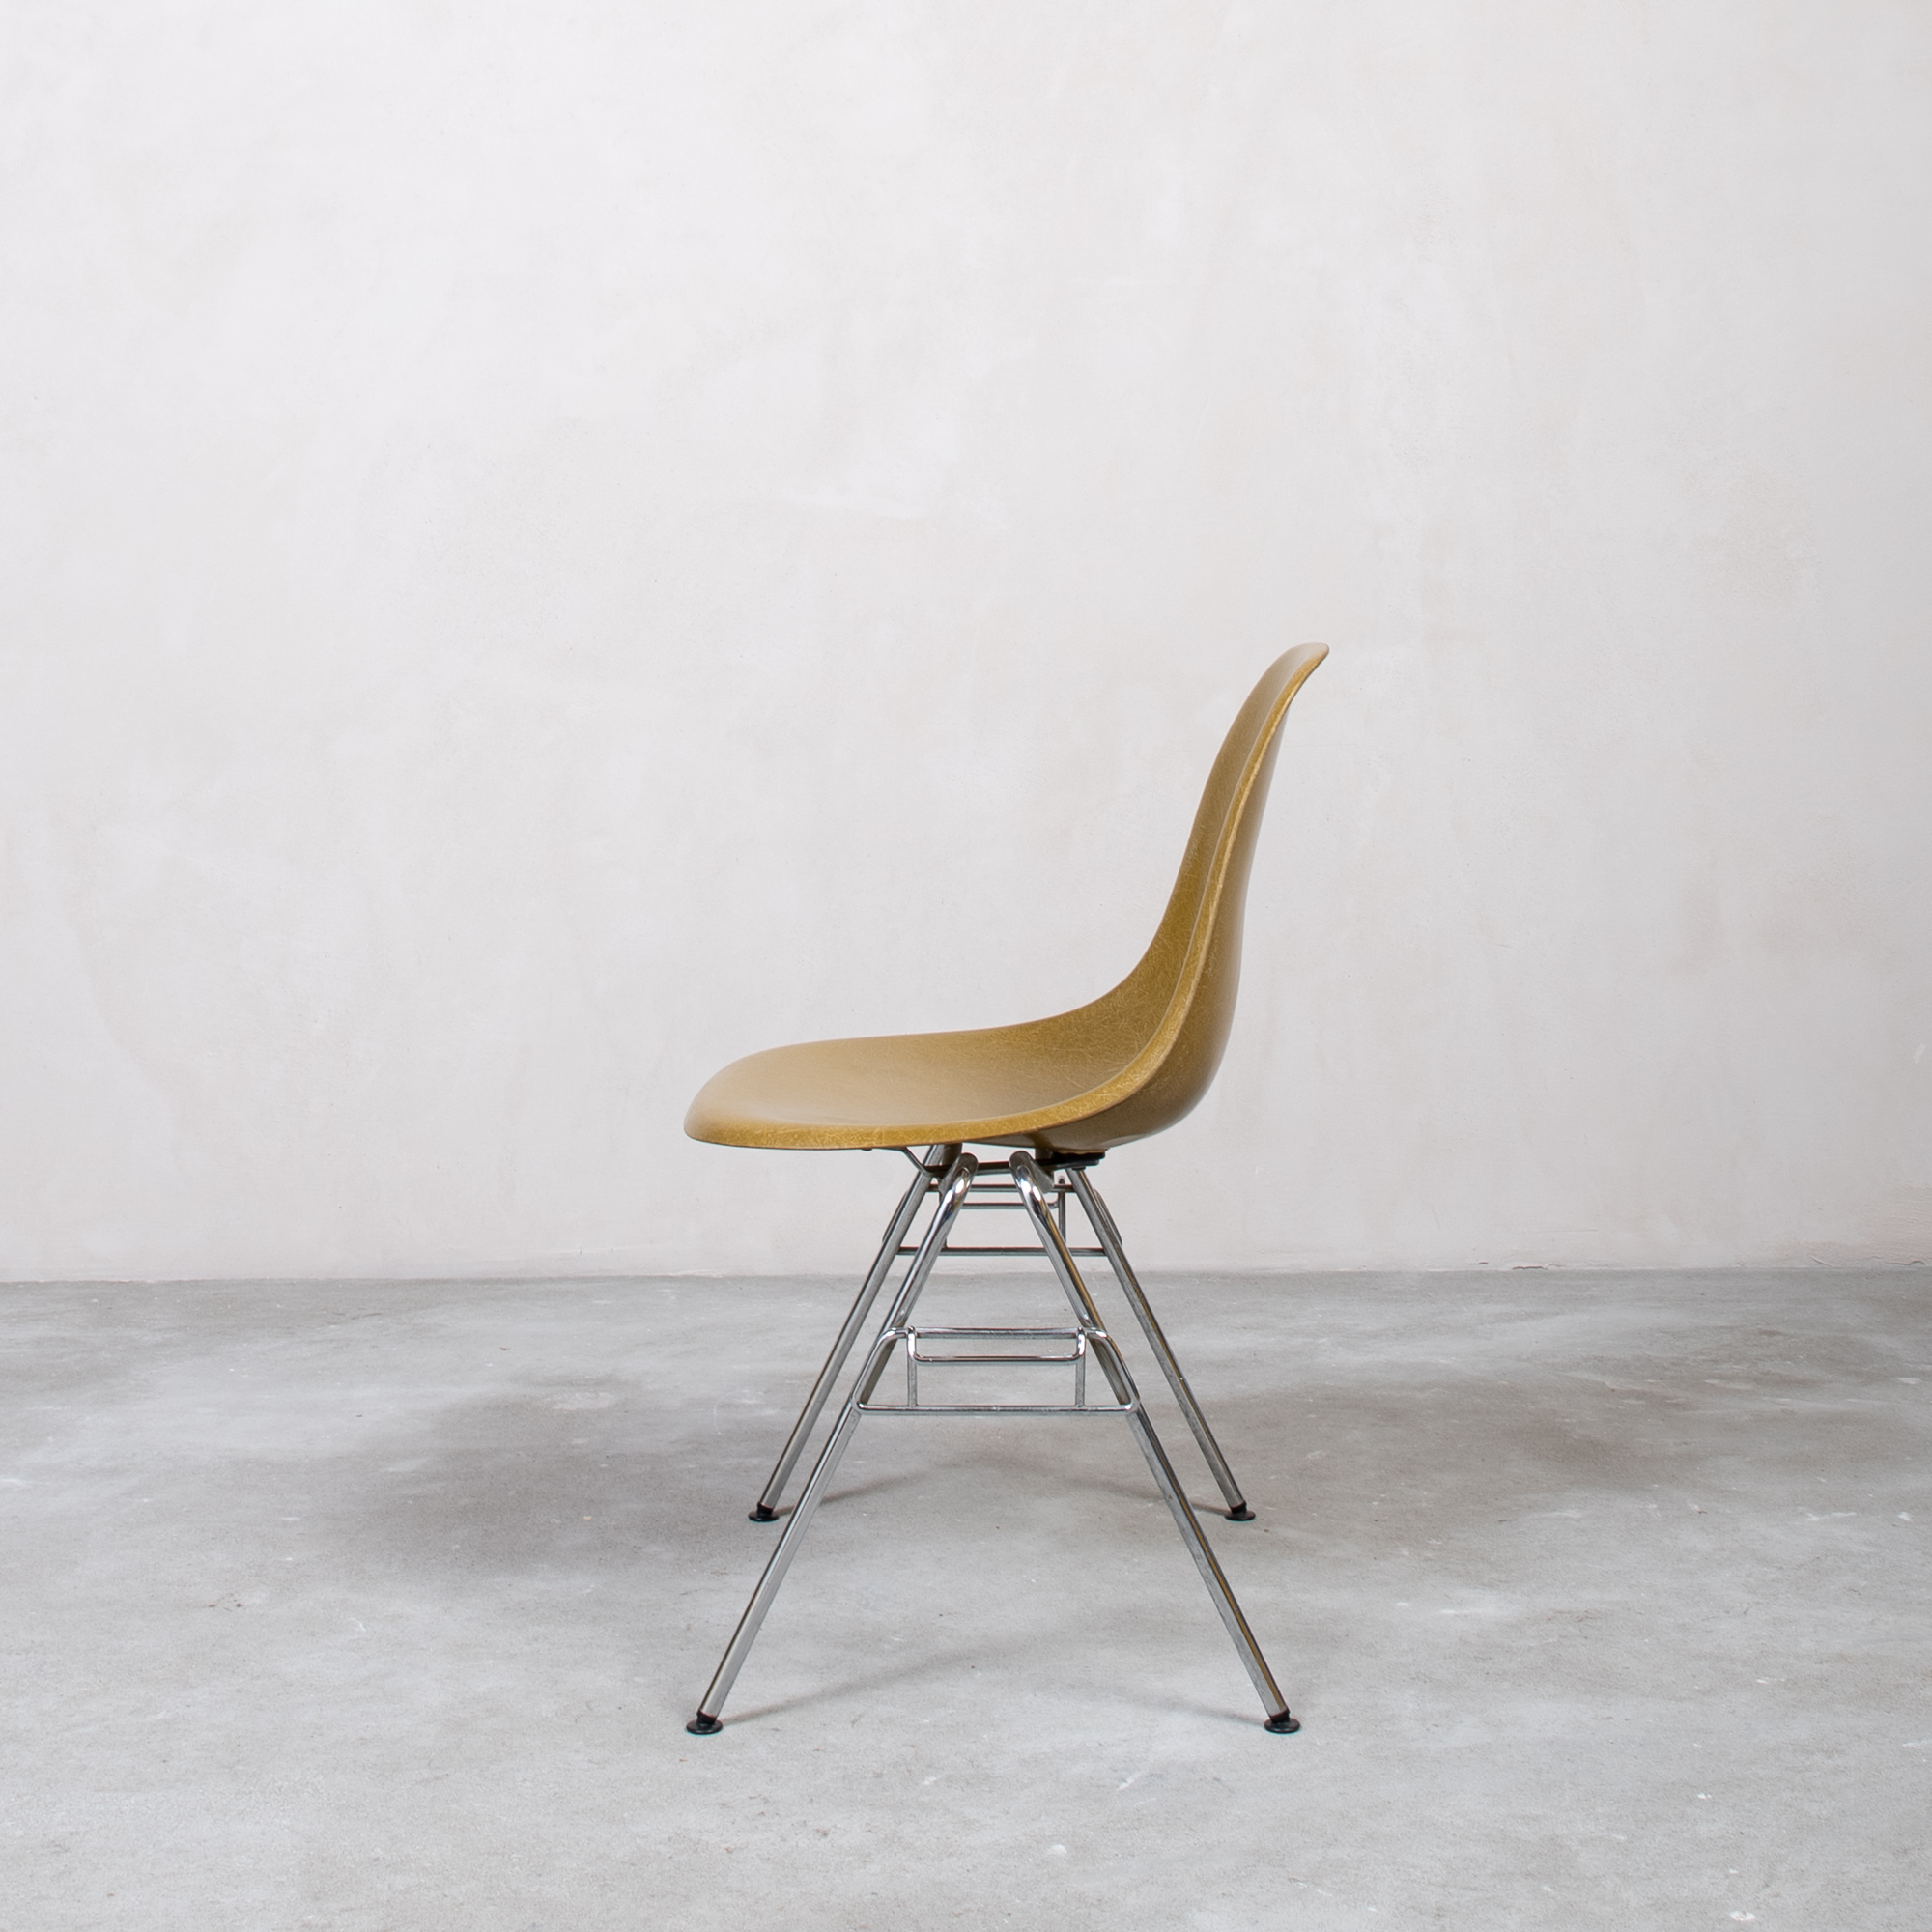 Eames Fiberglass Side Chair by Herman Miller Khaki